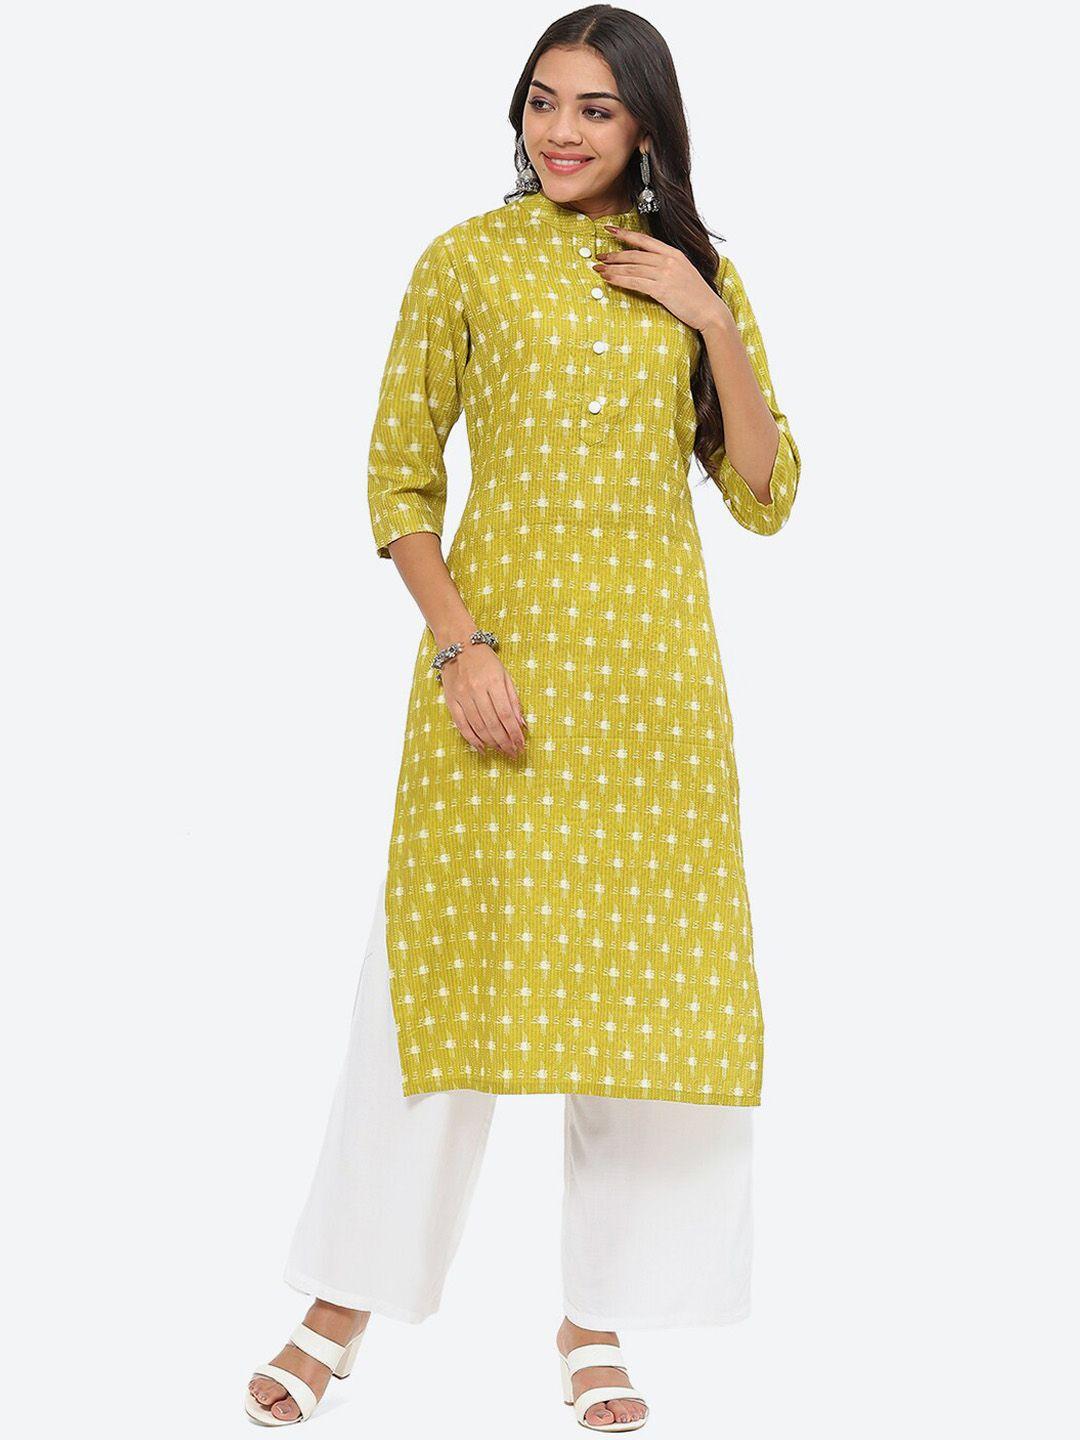 kurti's by menka ikkat woven design mandarin collar straight cotton kurta